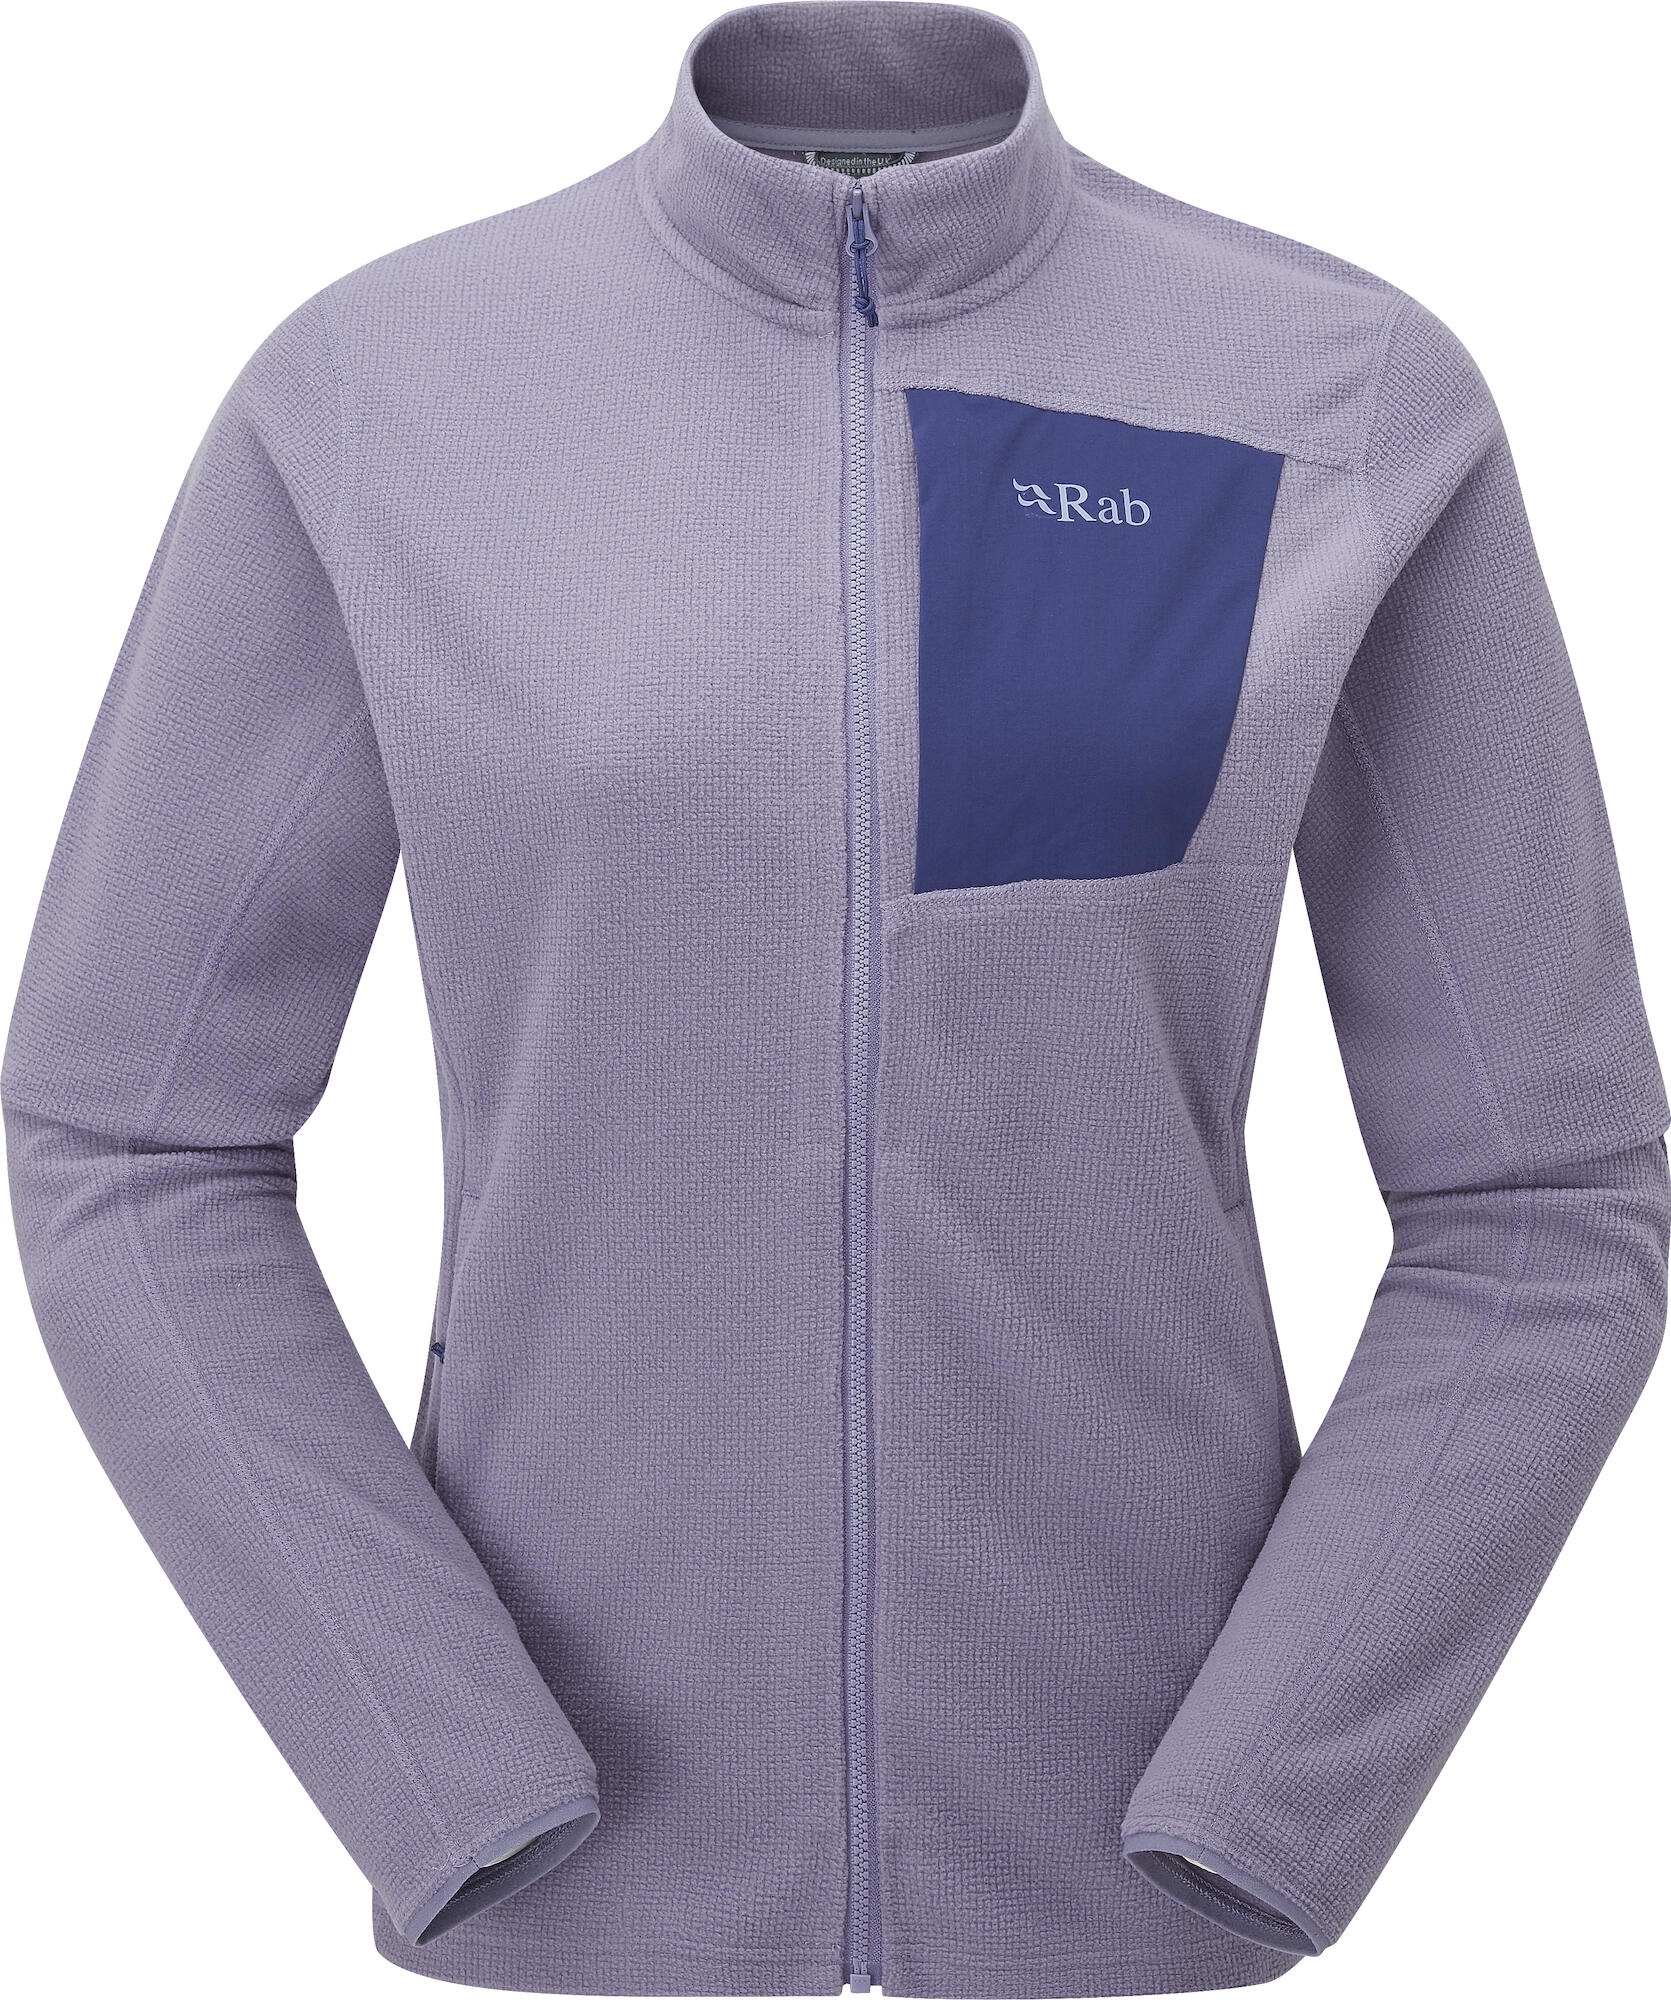 Rab Tecton Jacket Wmns purple sage (PSG) 12